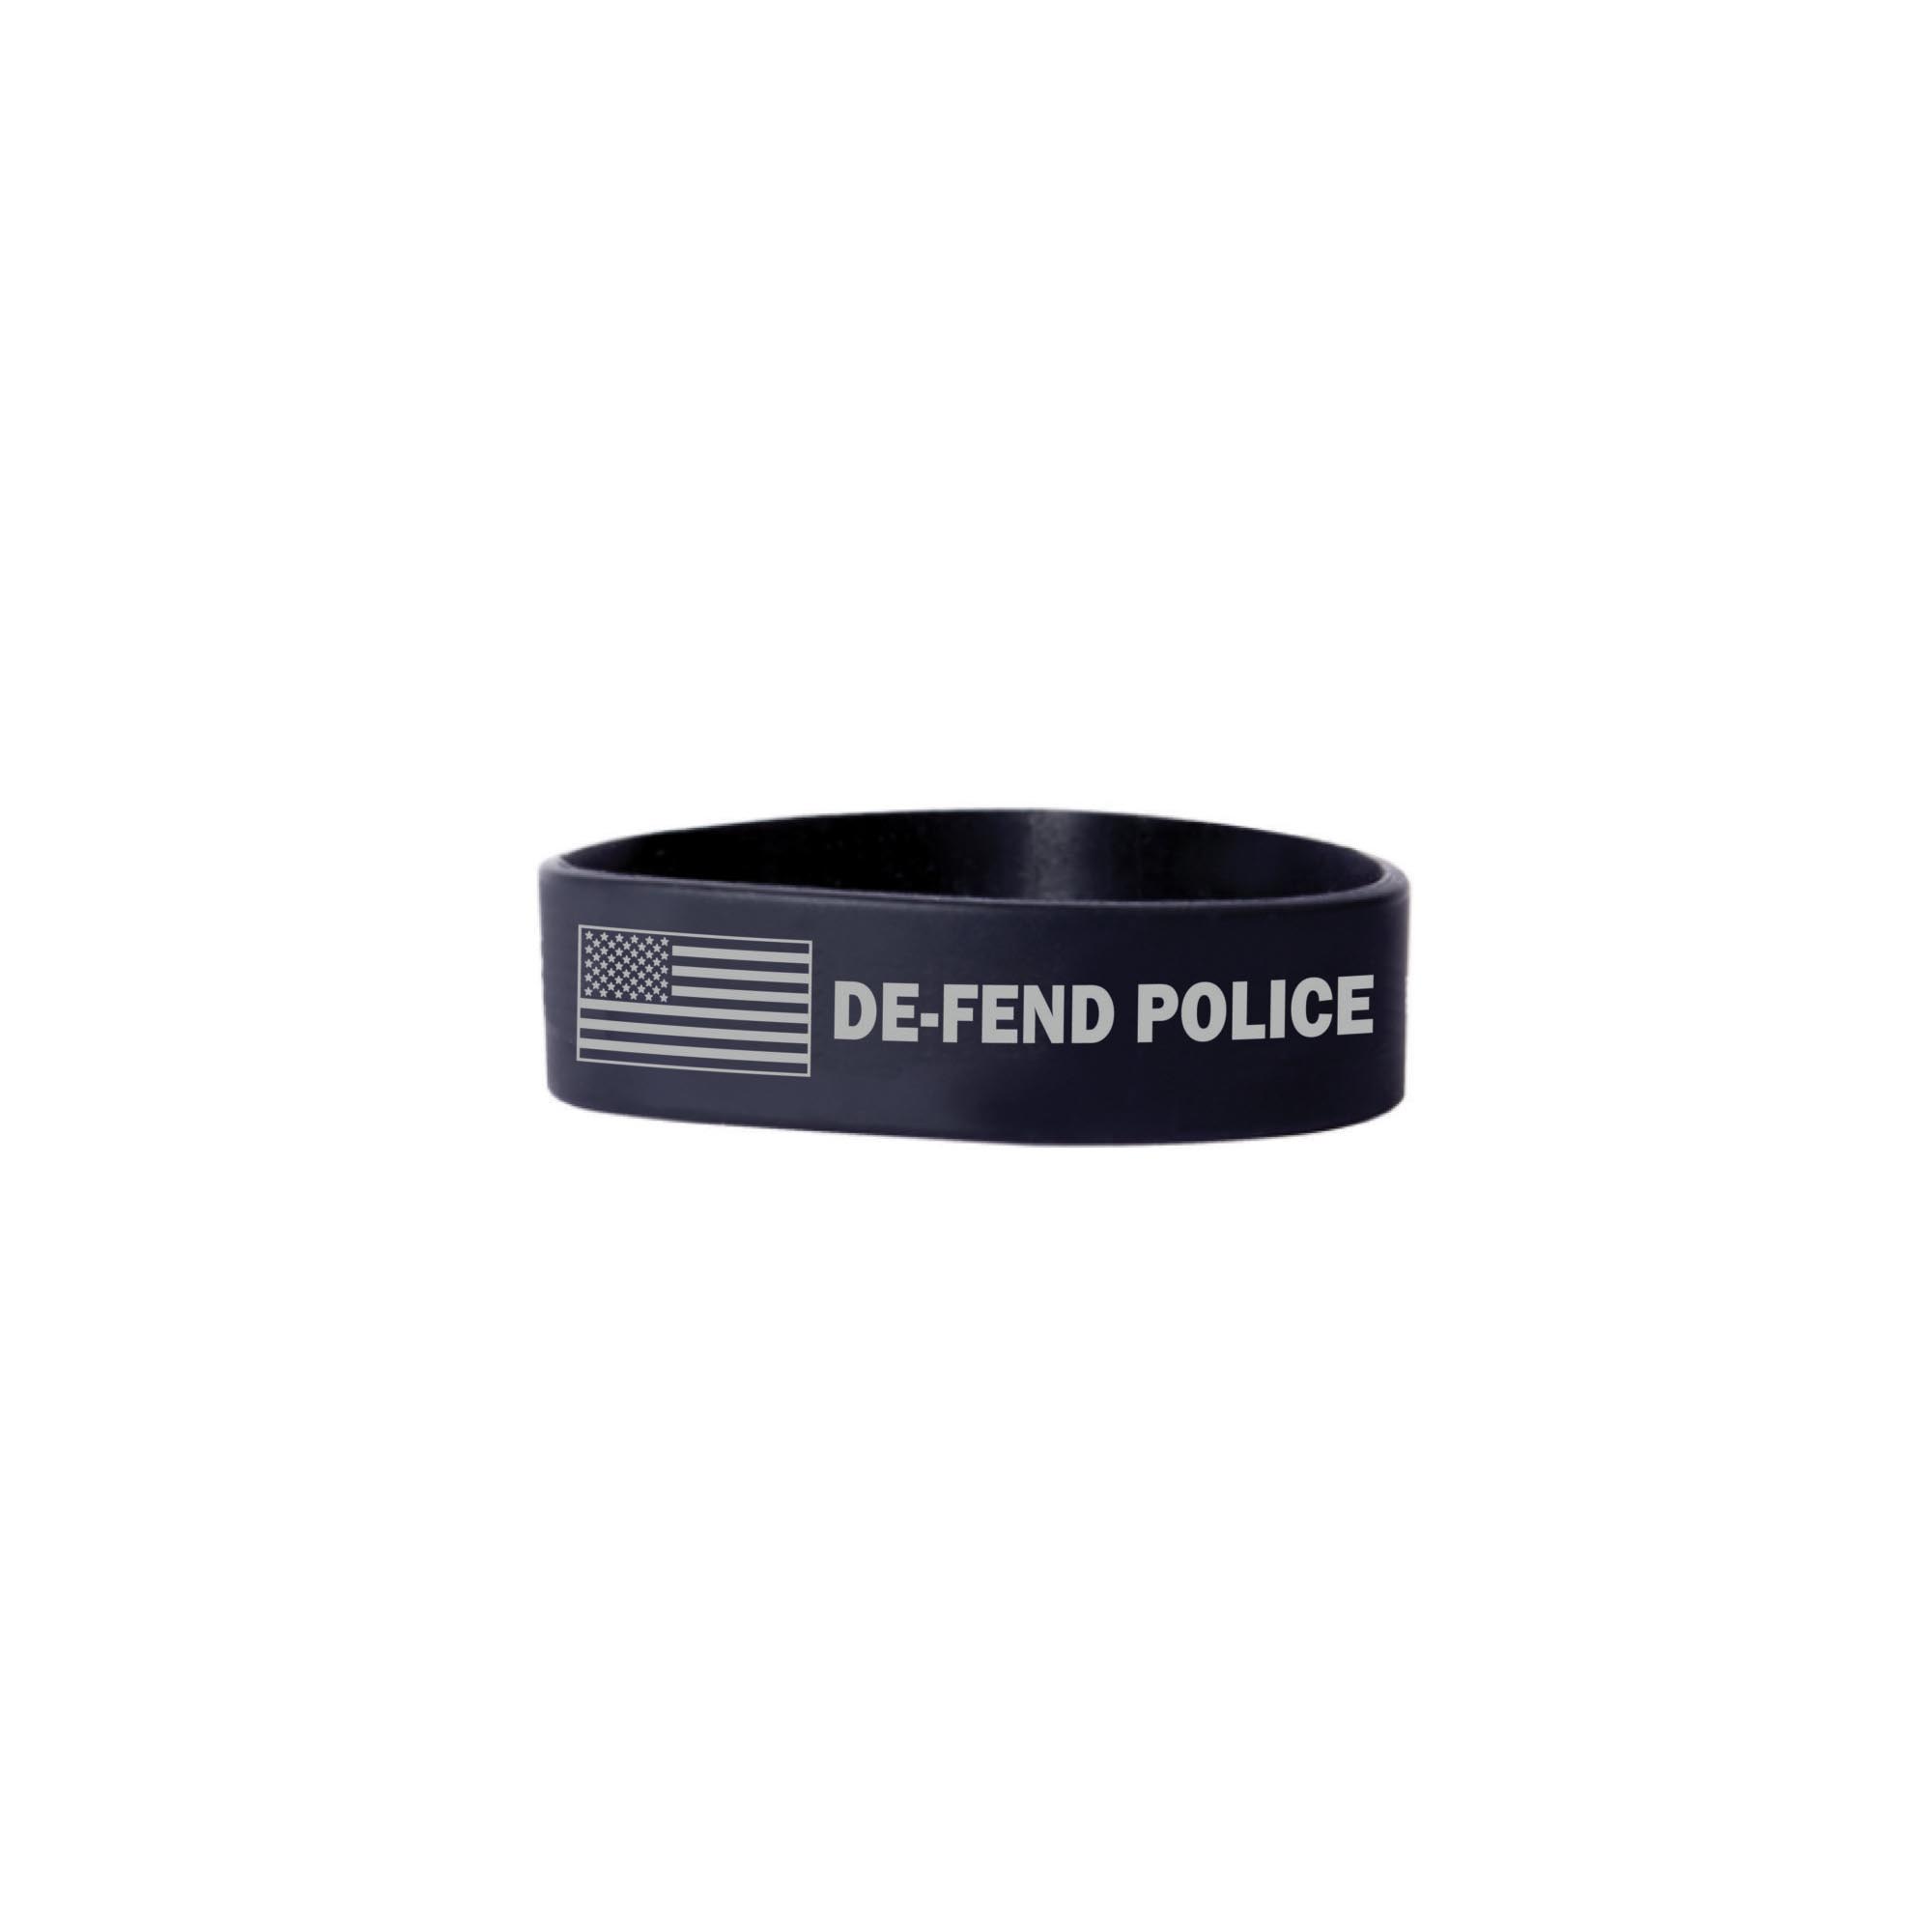 Police DE-FEND Wristband –